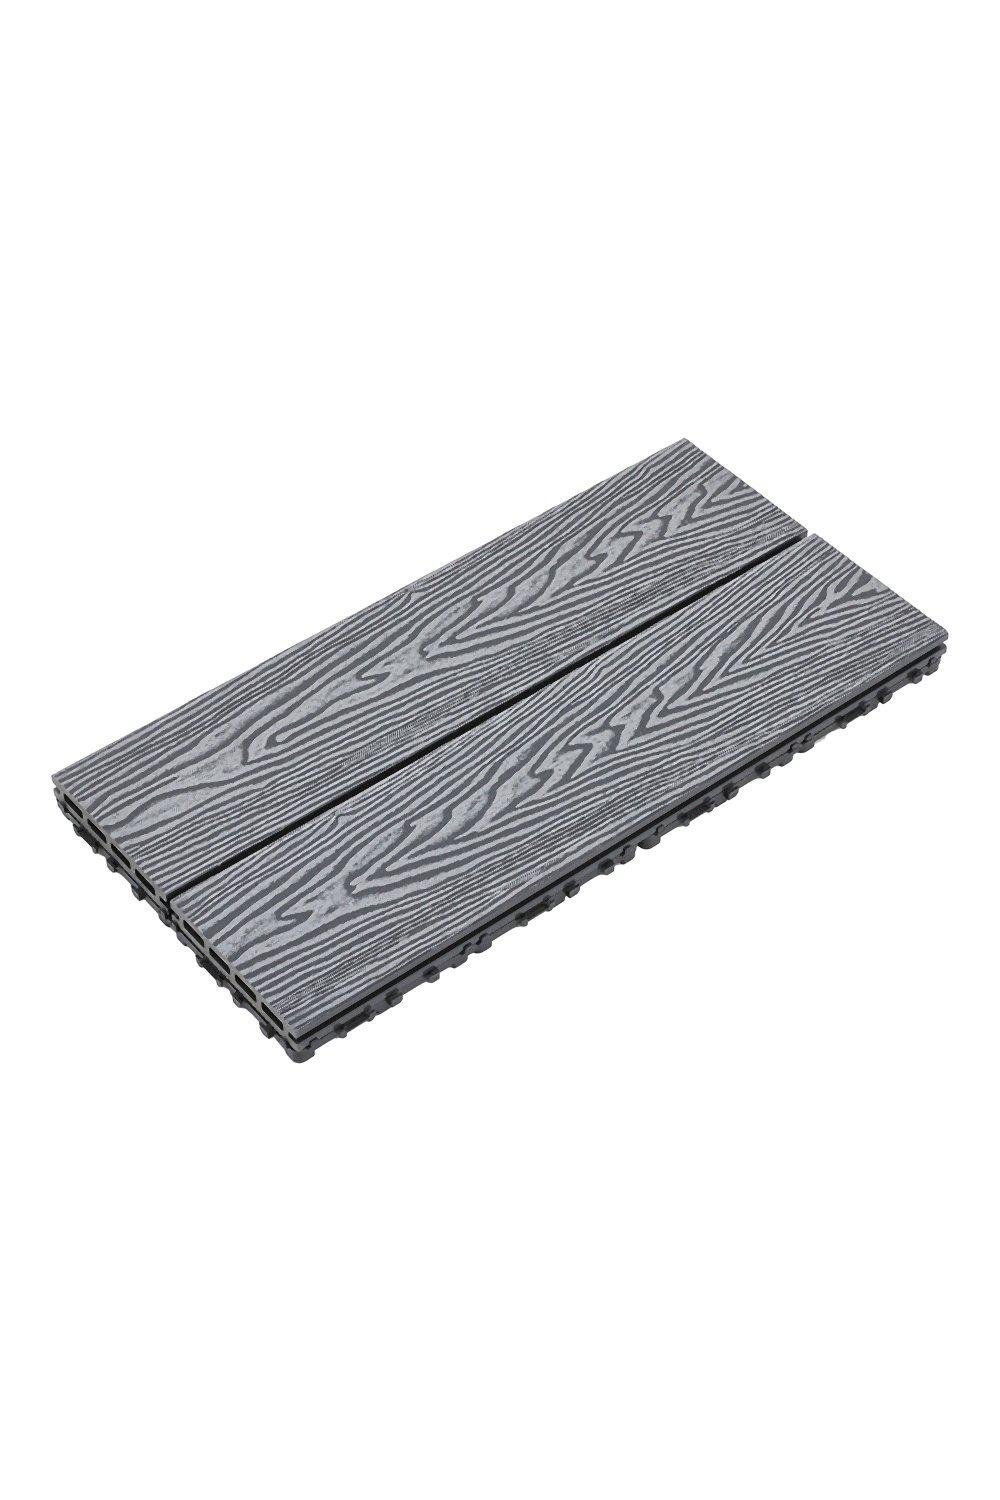 6Pcs Wood Grain Composite Deck Tile